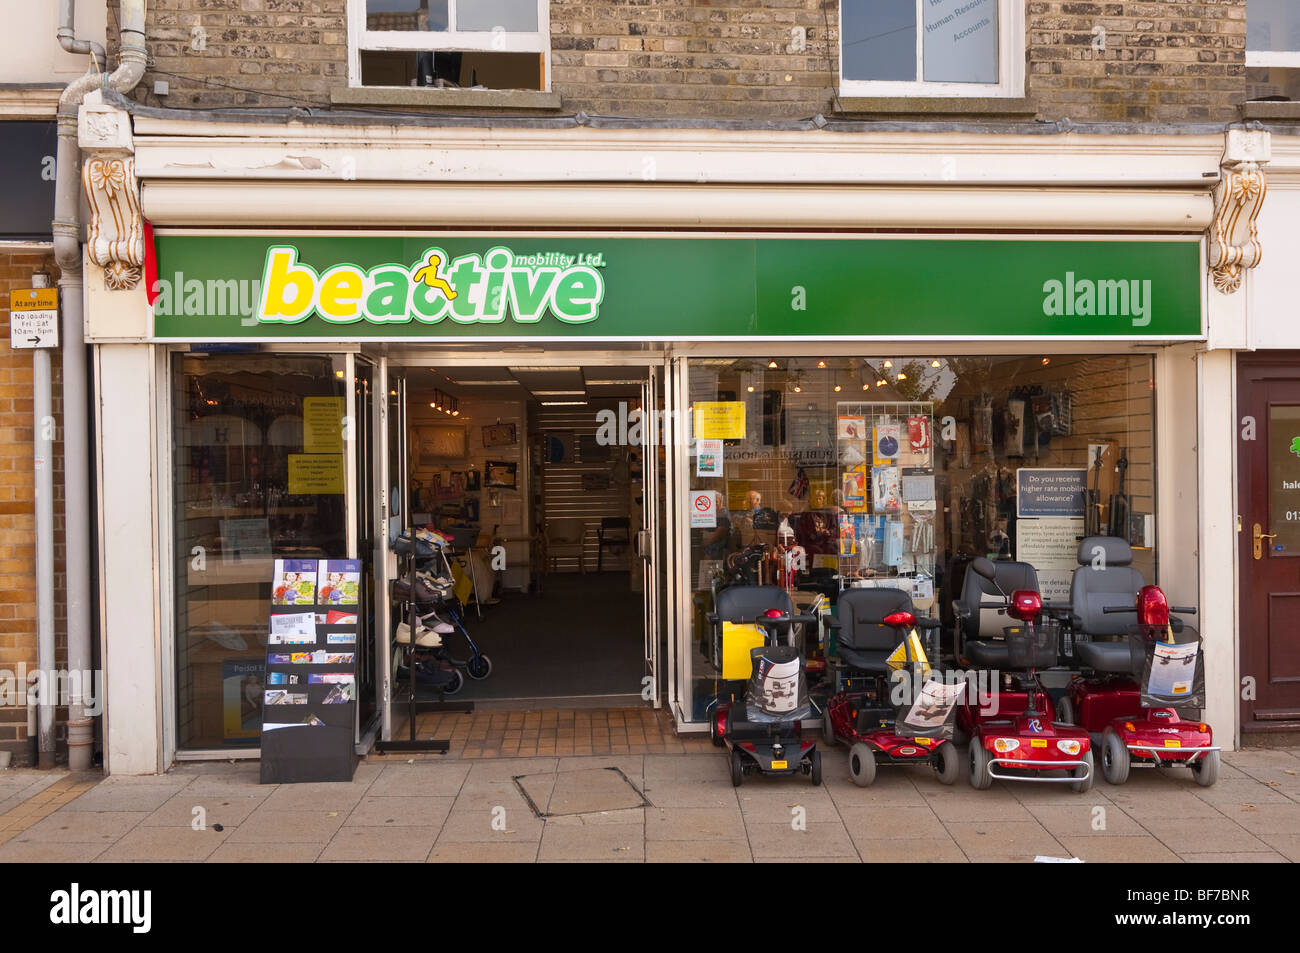 La mobilità beactive ltd. La mobilità shop store in Diss,Norfolk, Regno Unito Foto Stock